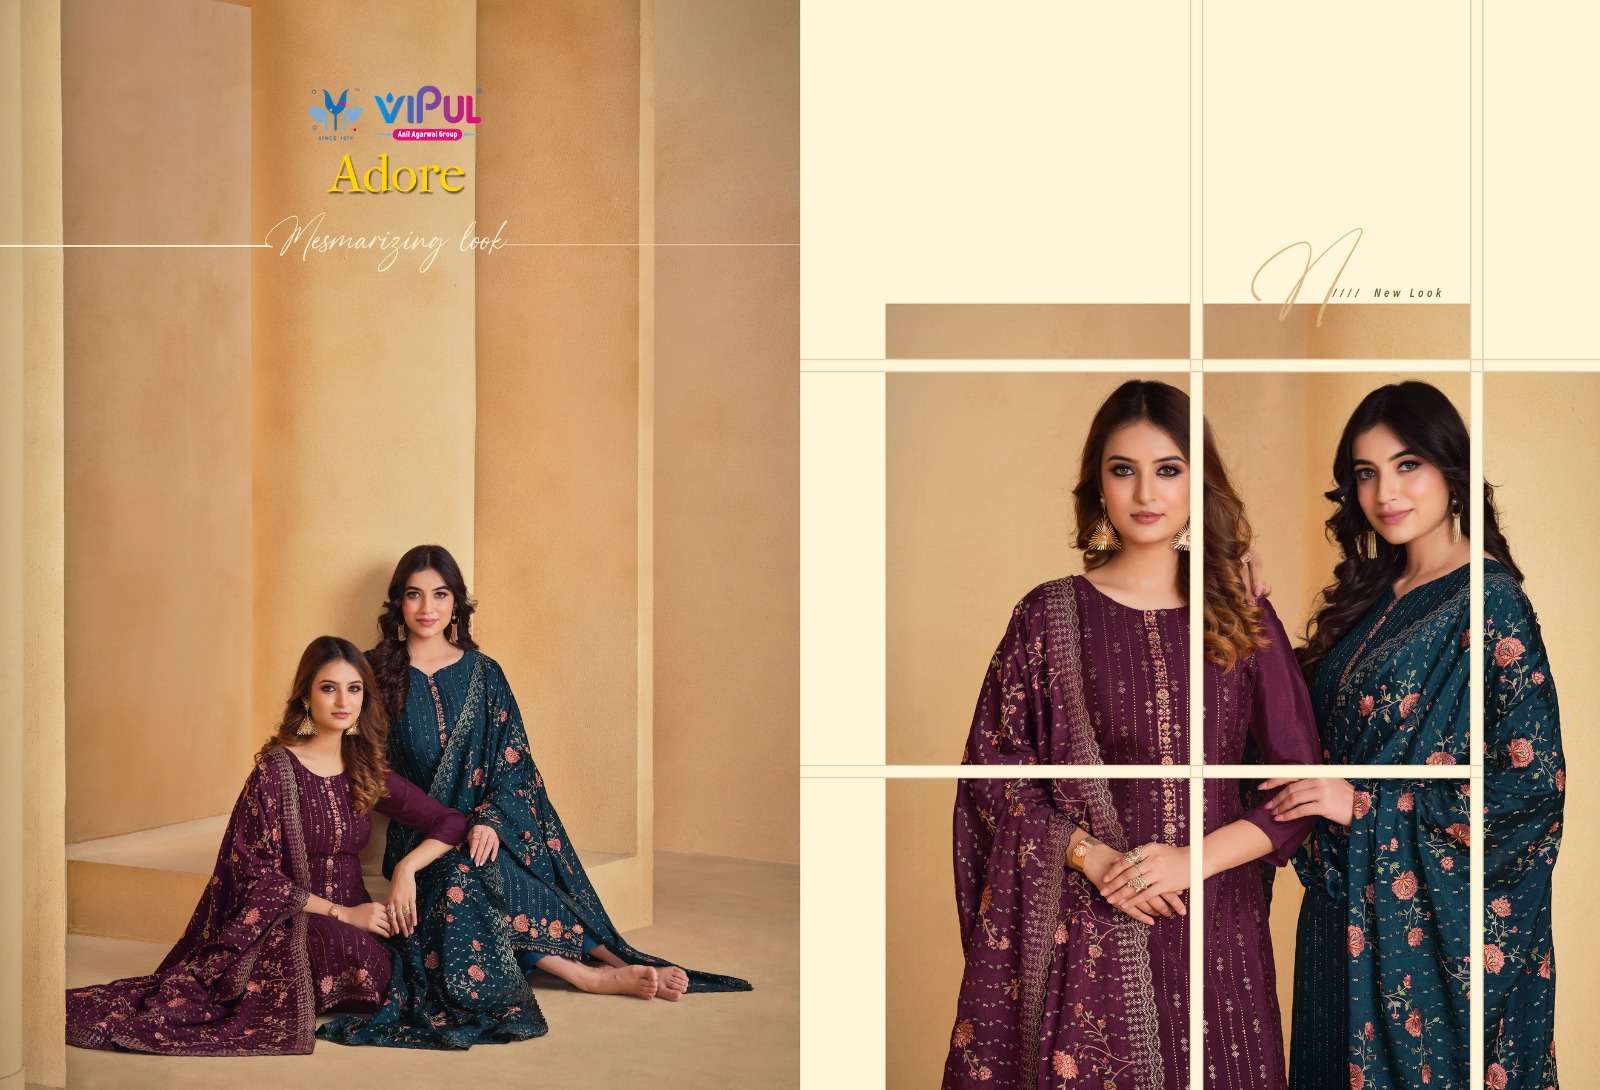 vipul fashion adore 5401-5406 series designer wedding salwar kameez wholesaler surat gujarat